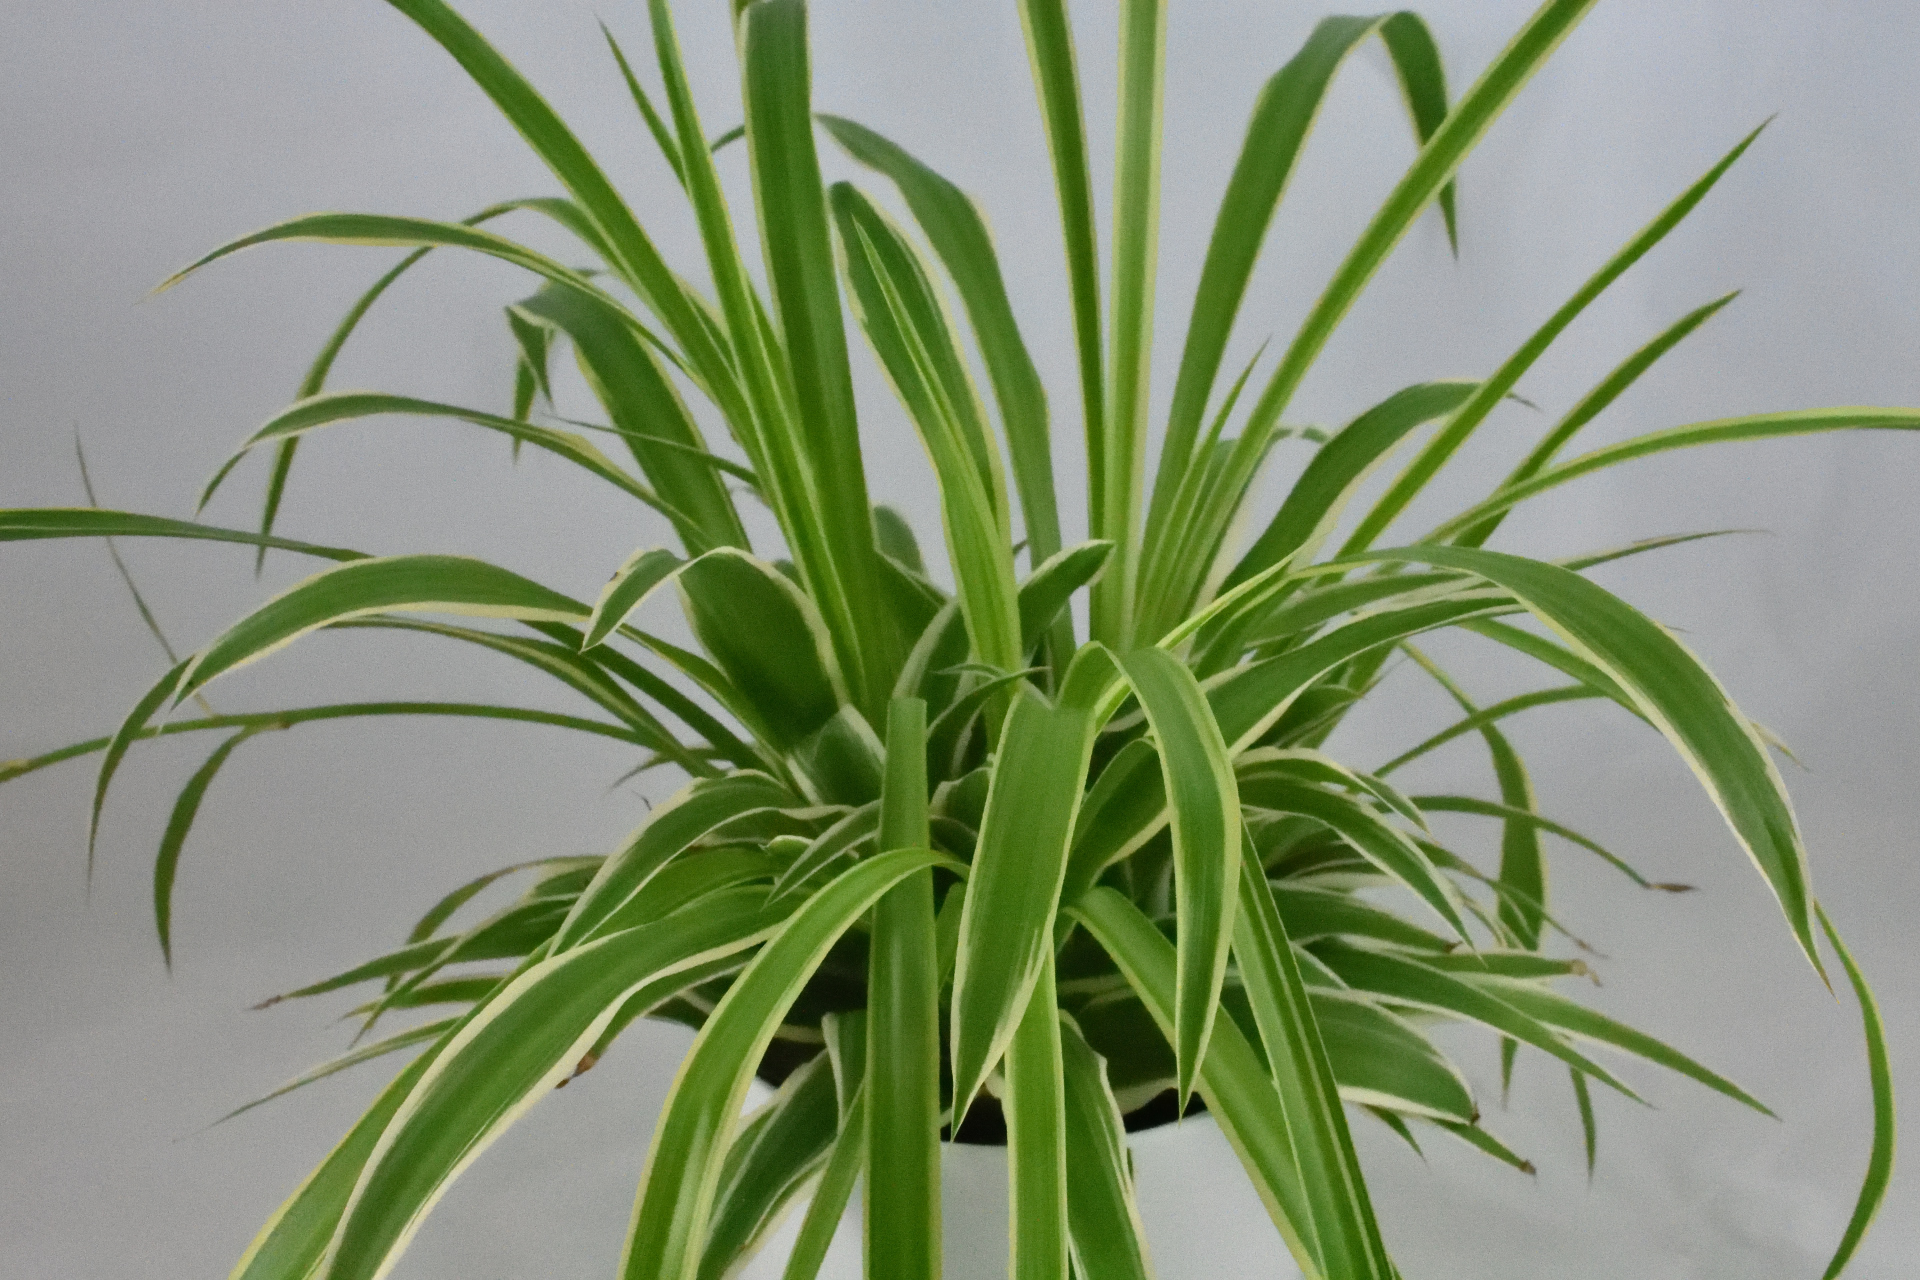 Eine Grünlilie (Chlorophytum) als Zimmerpflanze mit seitlich weiß gezeichneten Blättern.